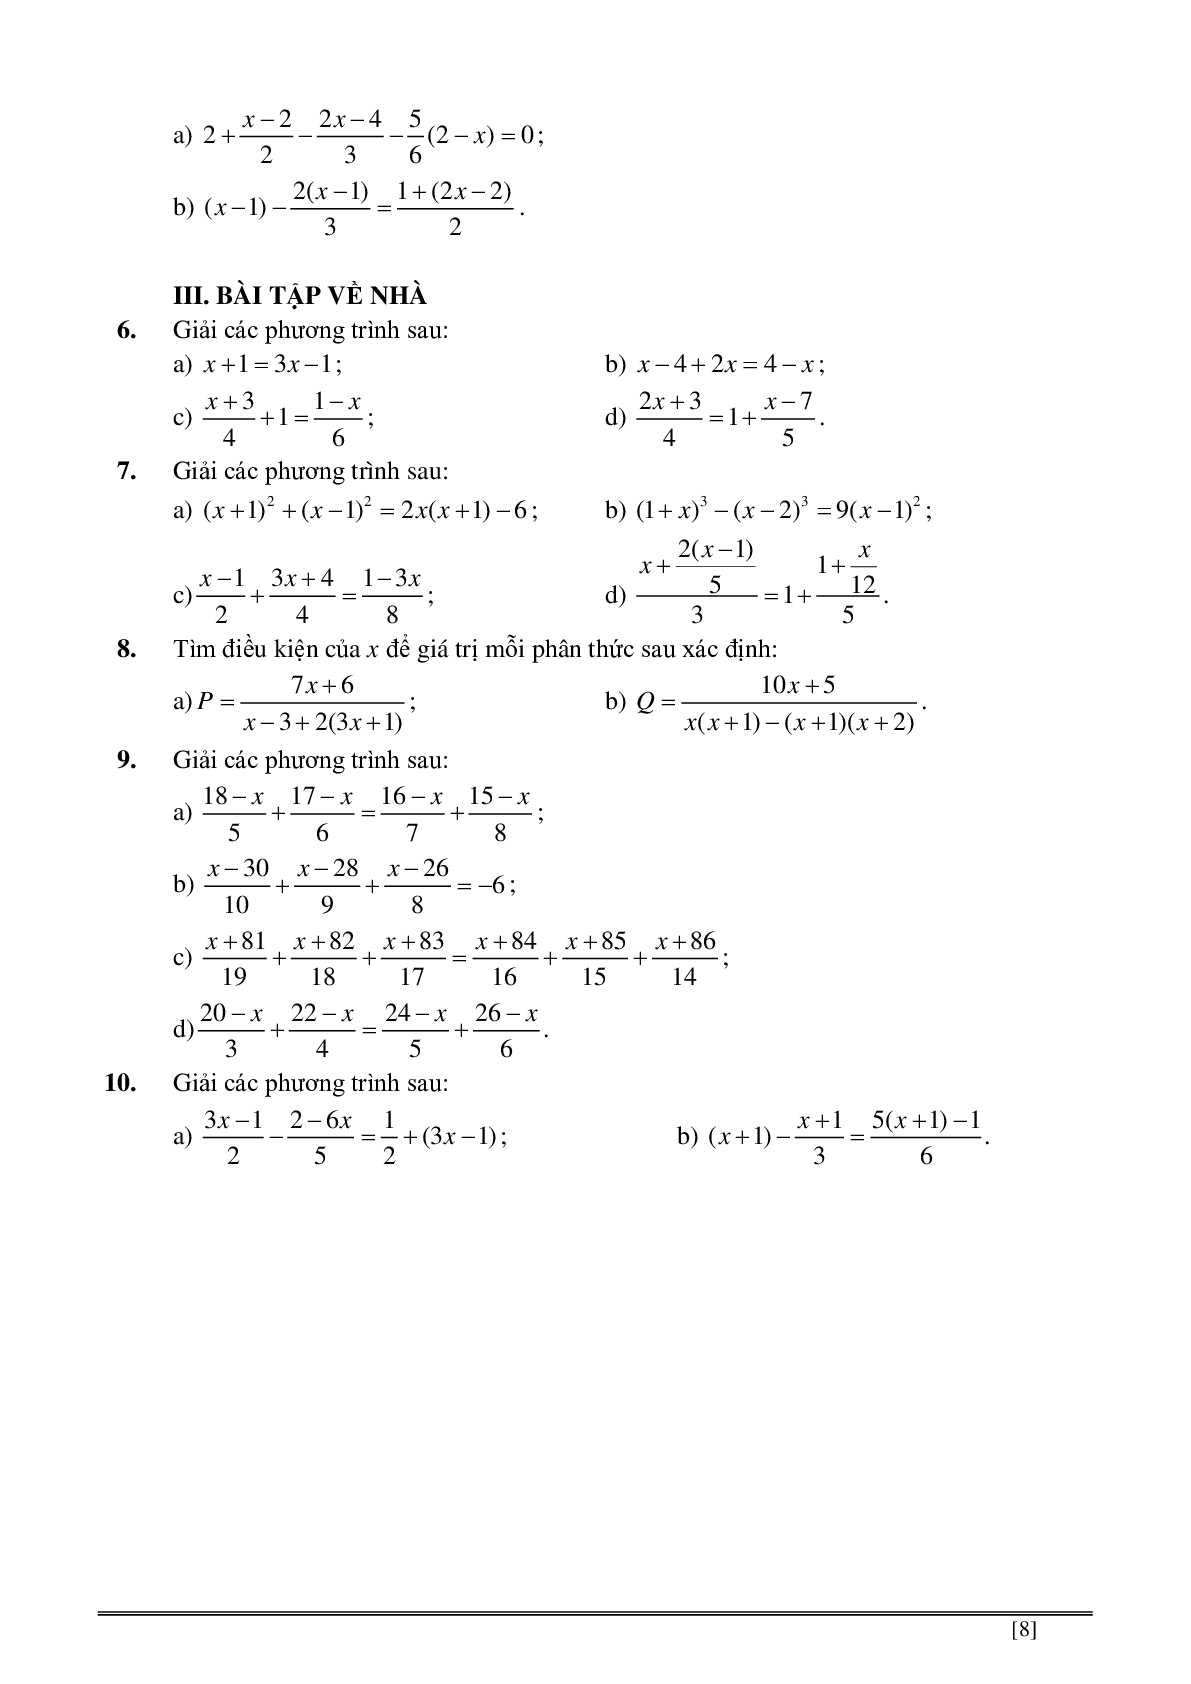 Củng cố và ôn luyện toán 8 kì 2 trang 139-186 (trang 8)